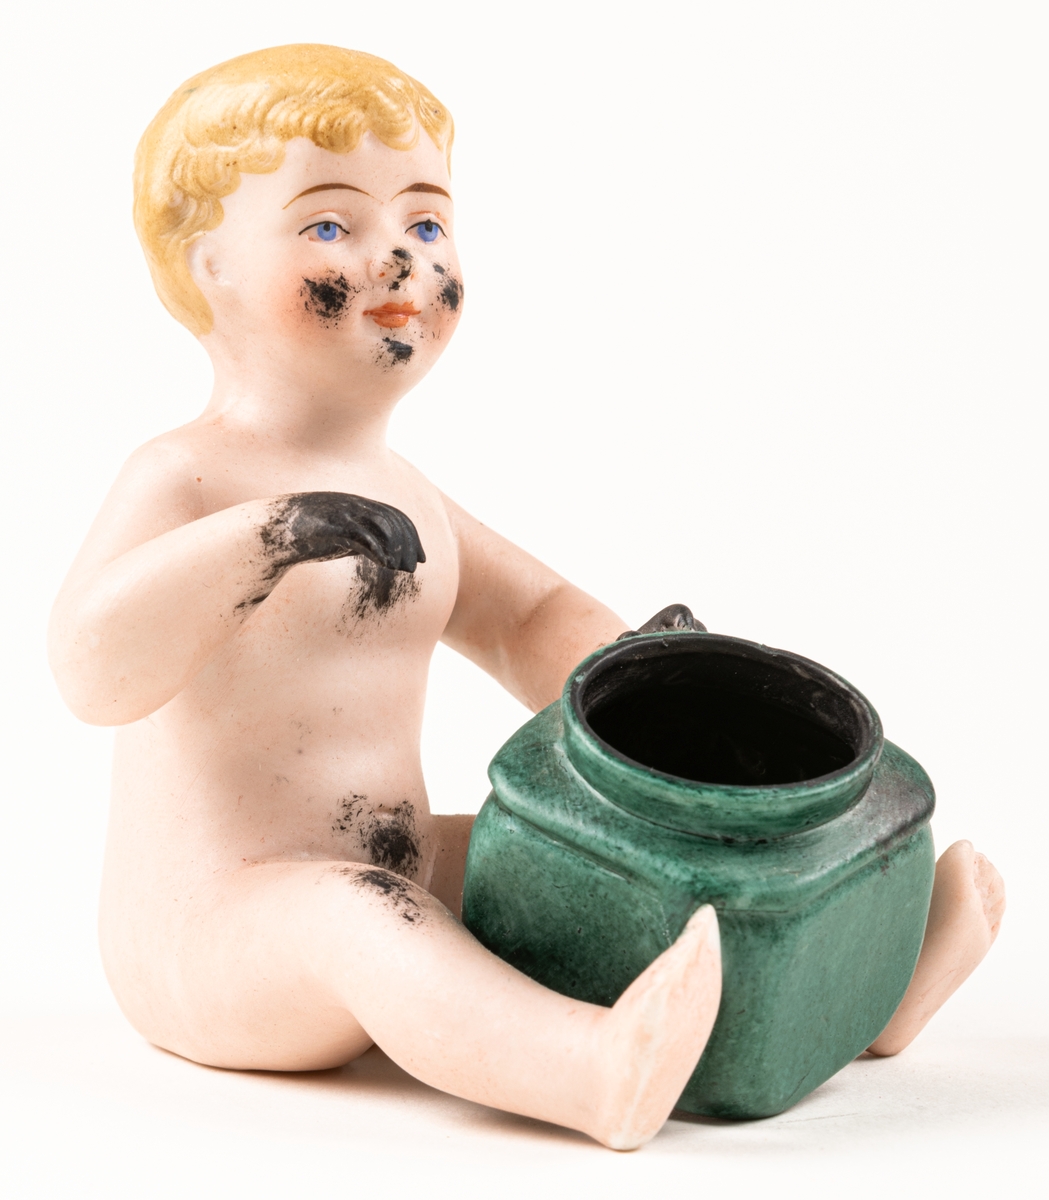 Bläckhorn i form av en naken pojke som sitten med en grön burk framför sig. Pojken är blond med svarata händer och bläckfläckar i ansiktet. Ihålig, av keramik.